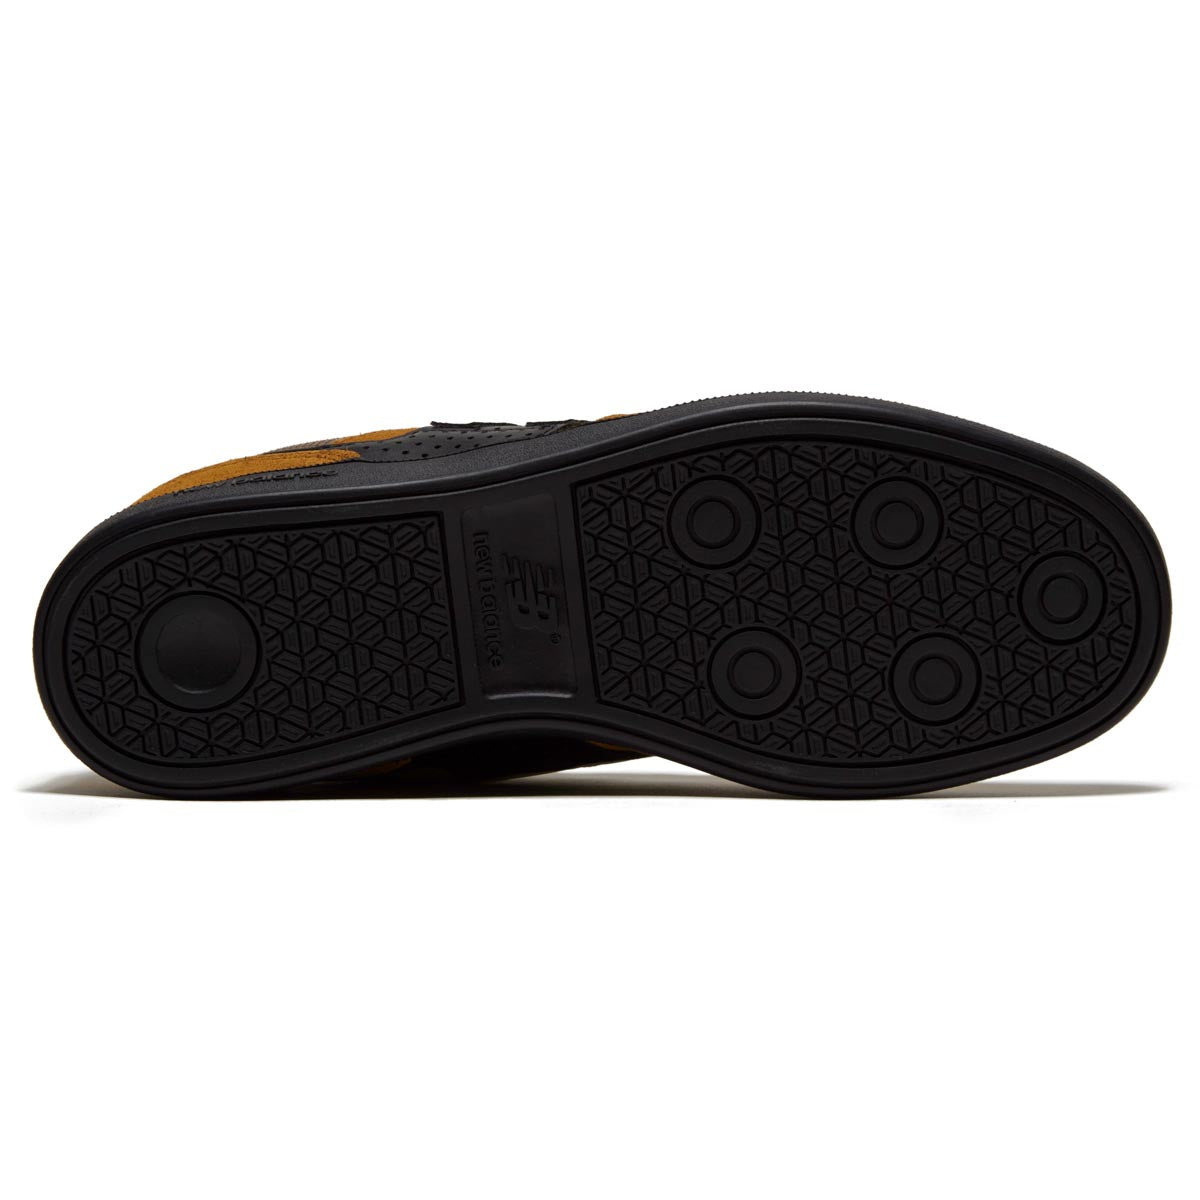 New Balance 508 Westgate Shoes - Caramel/Black image 4